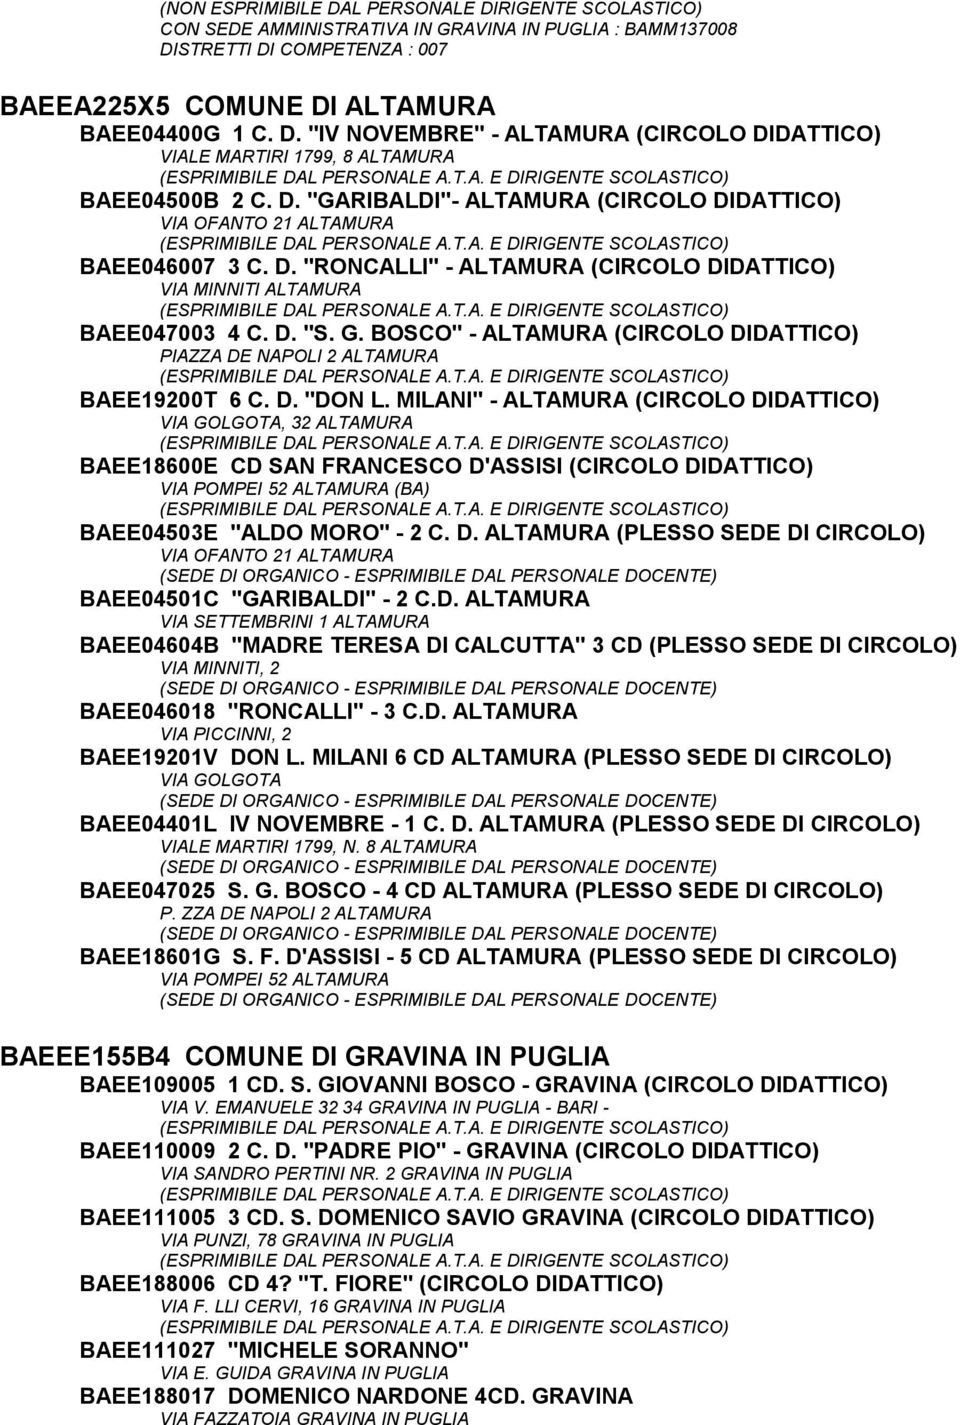 BOSCO" - ALTAMURA (CIRCOLO DIDATTICO) PIAZZA DE NAPOLI 2 ALTAMURA BAEE19200T 6 C. D. "DON L.